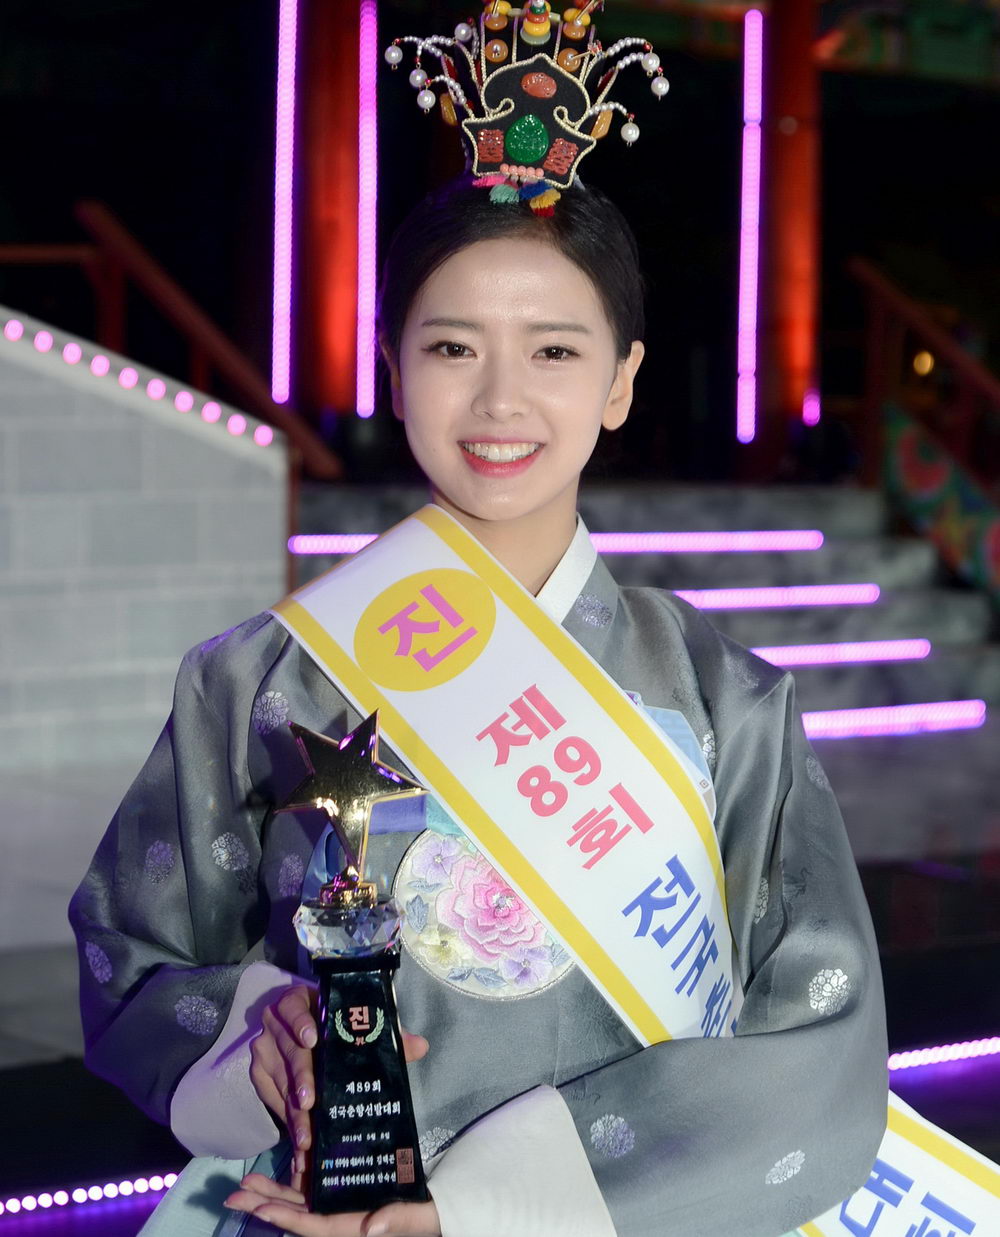 韩国 传统美人 选美大赛落幕21岁女大学生夺冠被赞端庄美